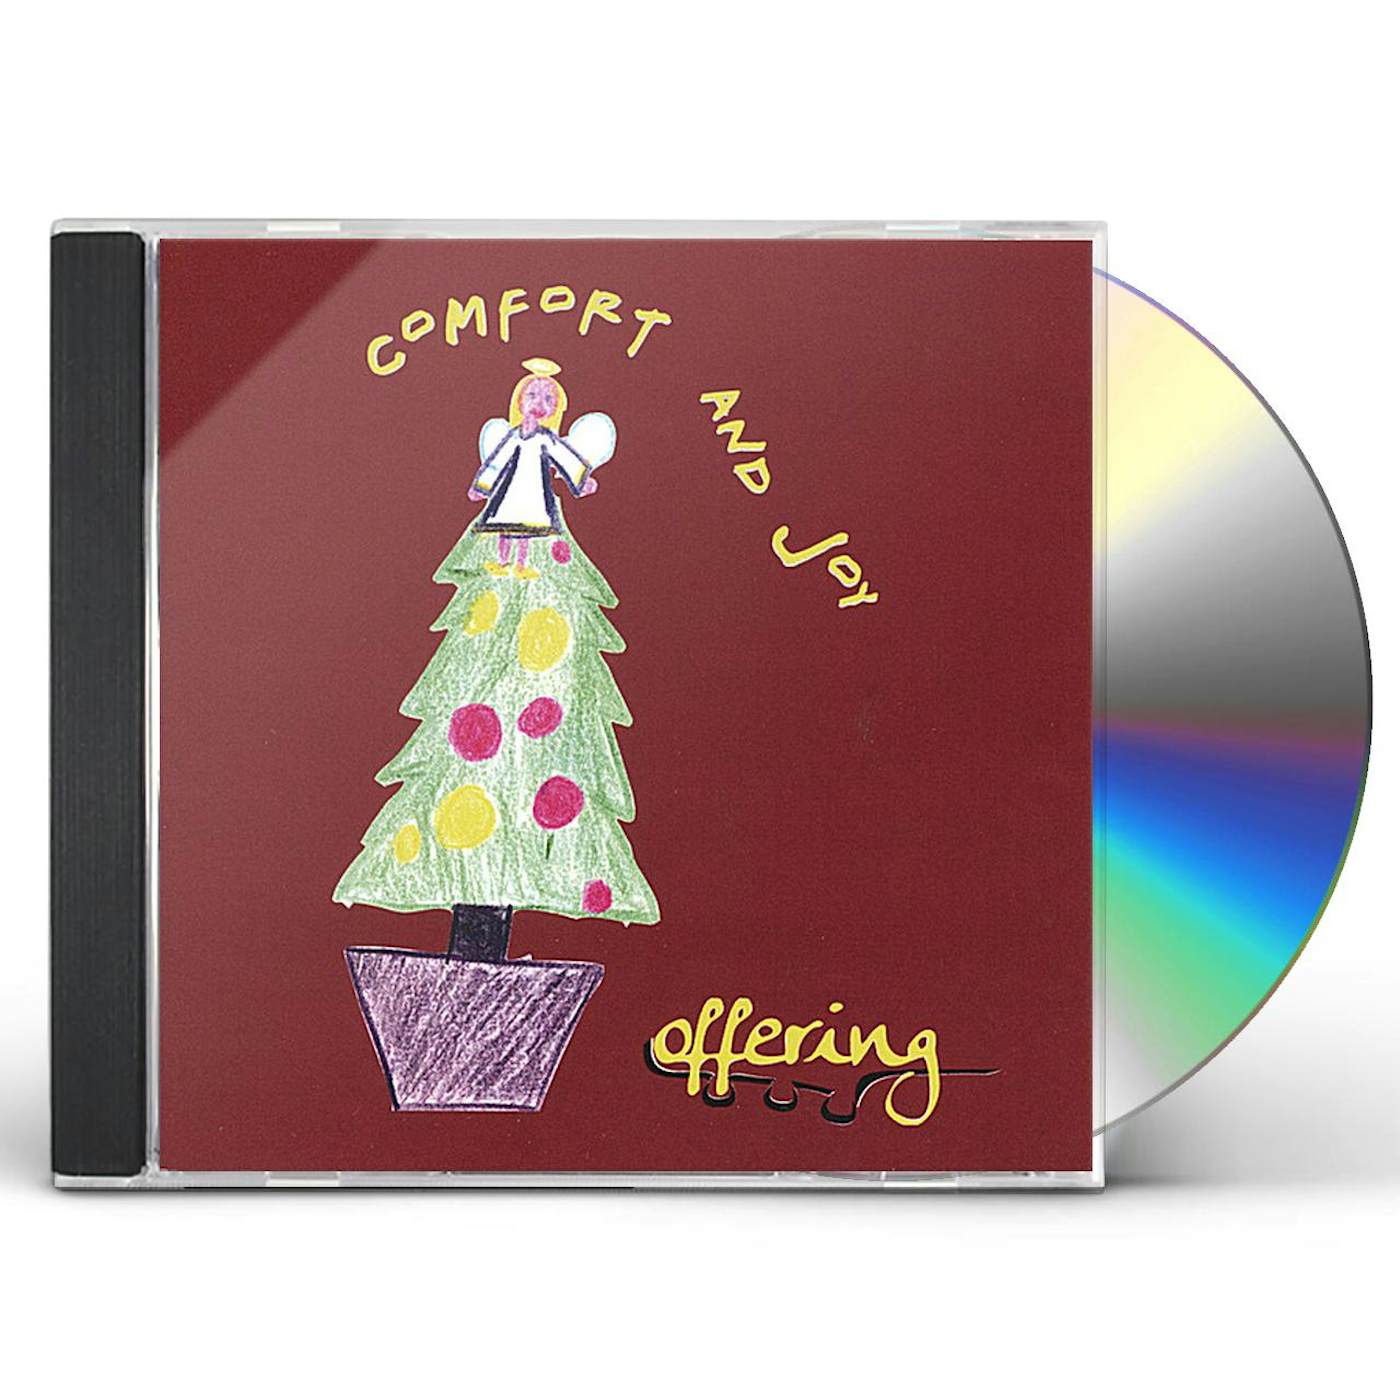 Offering COMFORT & JOY CD